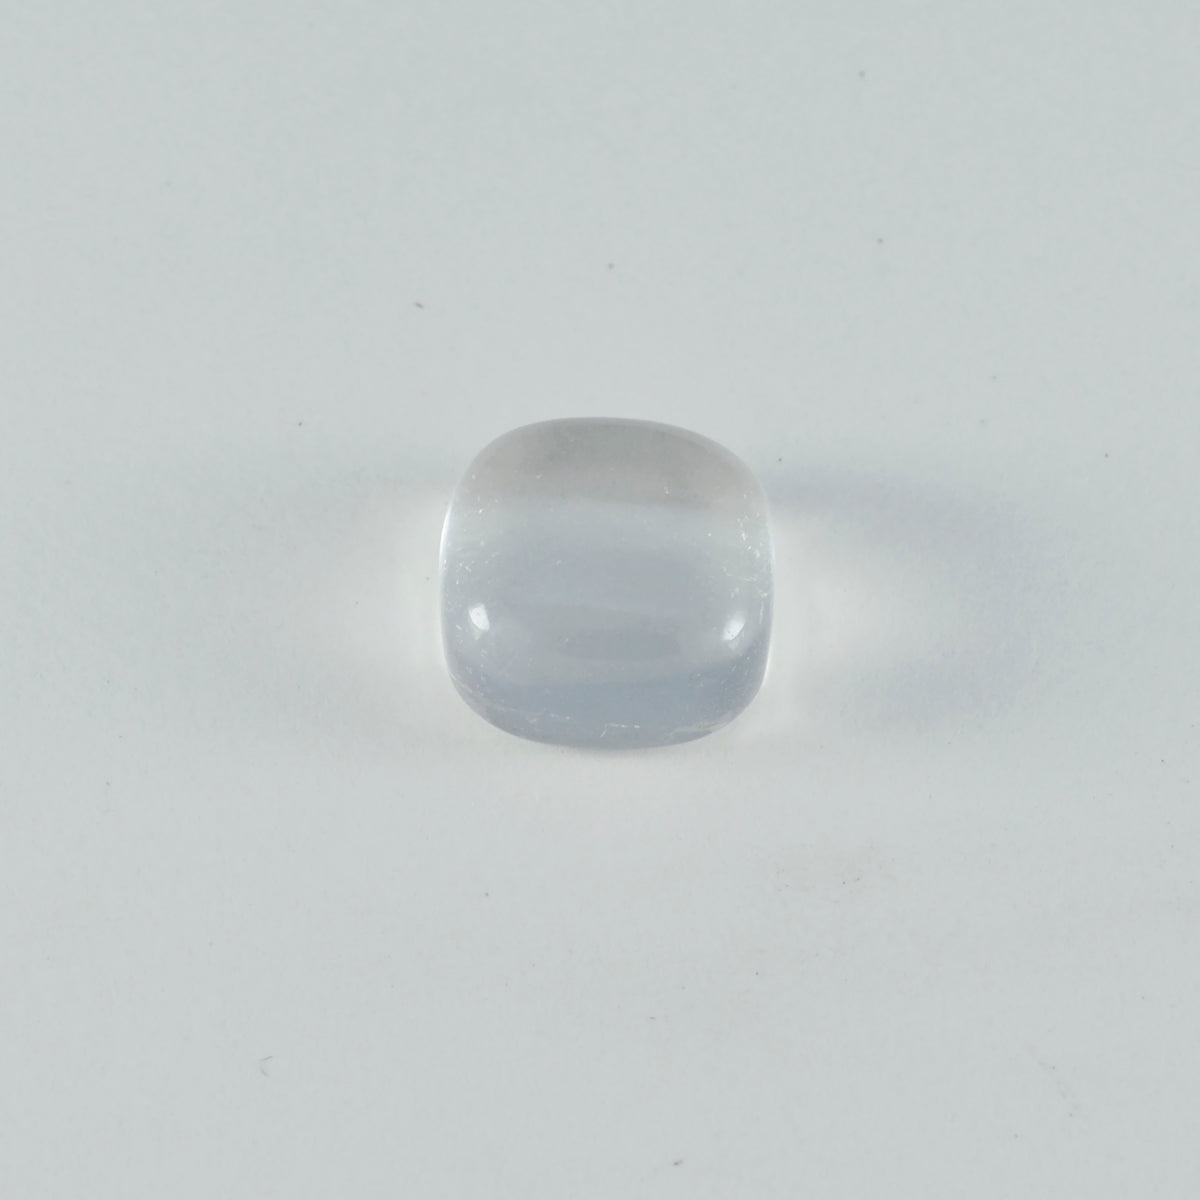 Riyogems 1 pieza cabujón de cuarzo cristal blanco 4x6mm forma octágono gema de excelente calidad